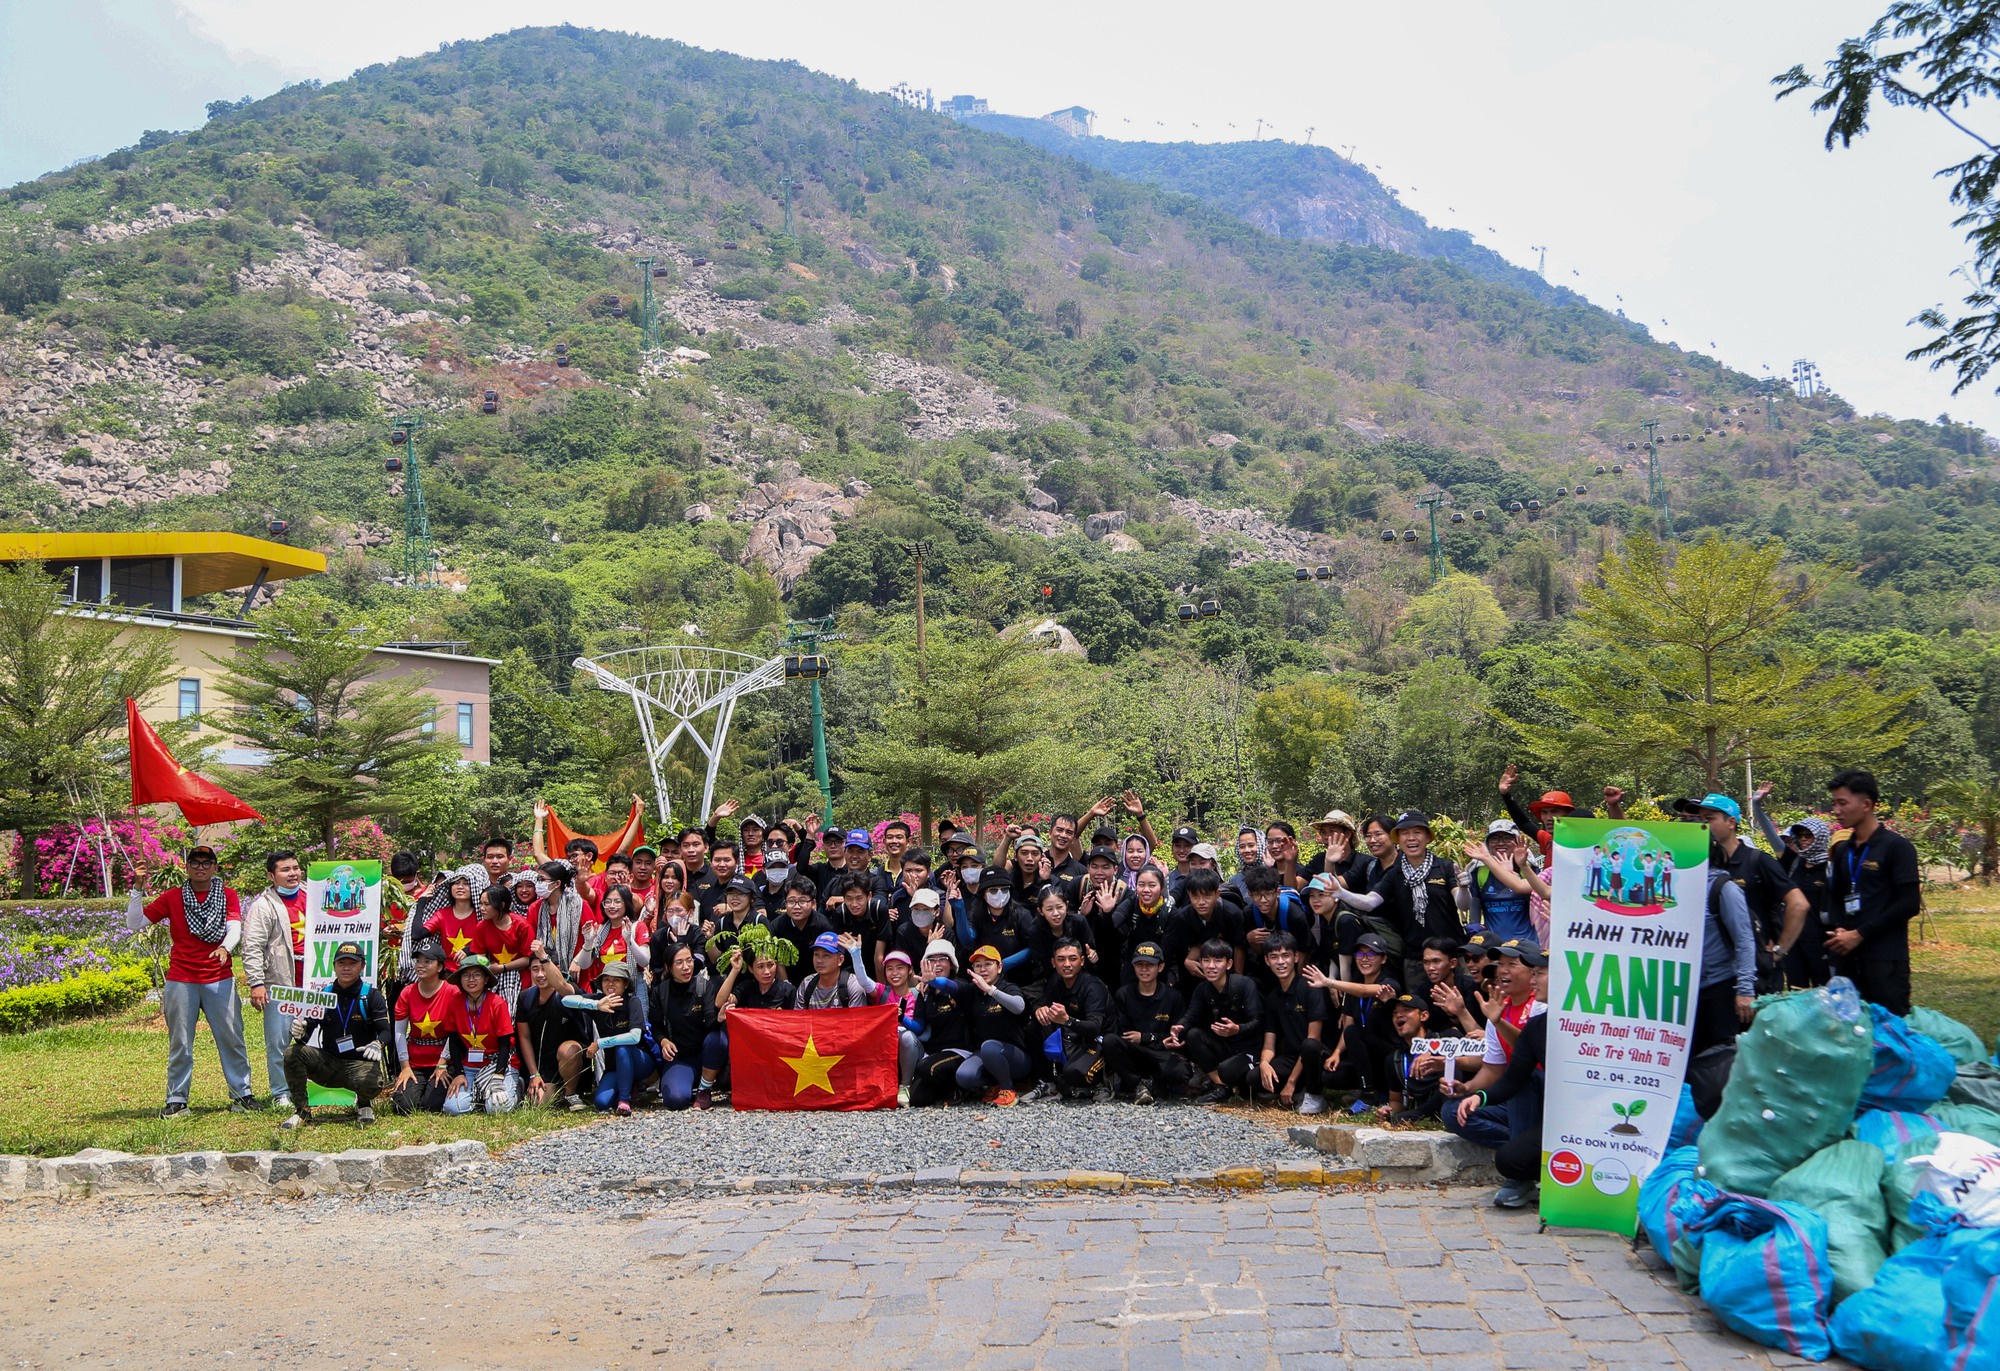 Tây Ninh: Hàng trăm bạn trẻ kết nối hành trình xanh ở núi Bà Đen - Ảnh 1.